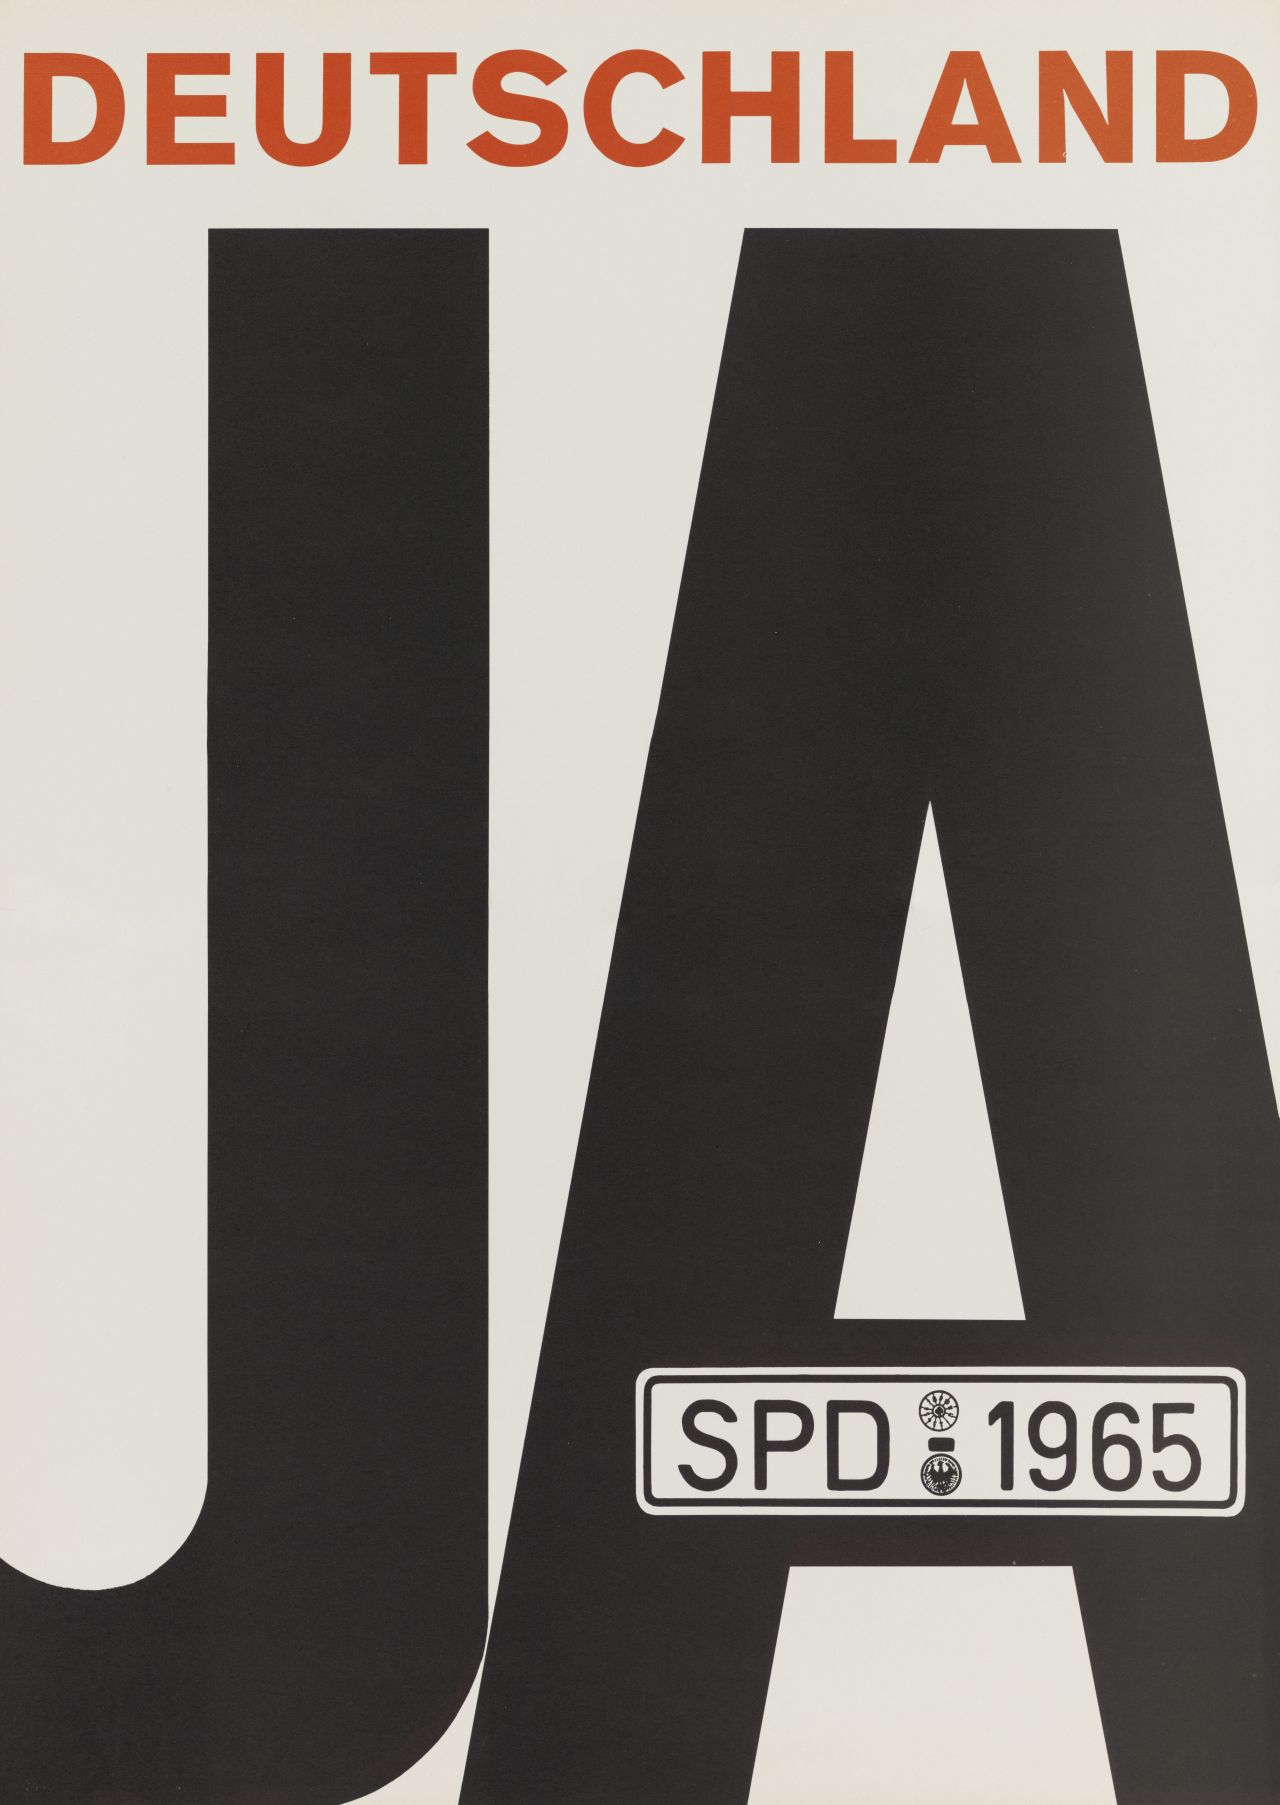 Wahlplakat der SPD. Auf weißem Grund in schwarzer und roter Schrift der Plakattext sowie ein Autokennzeichen mit der Aufschrift: SPD - 1965. 